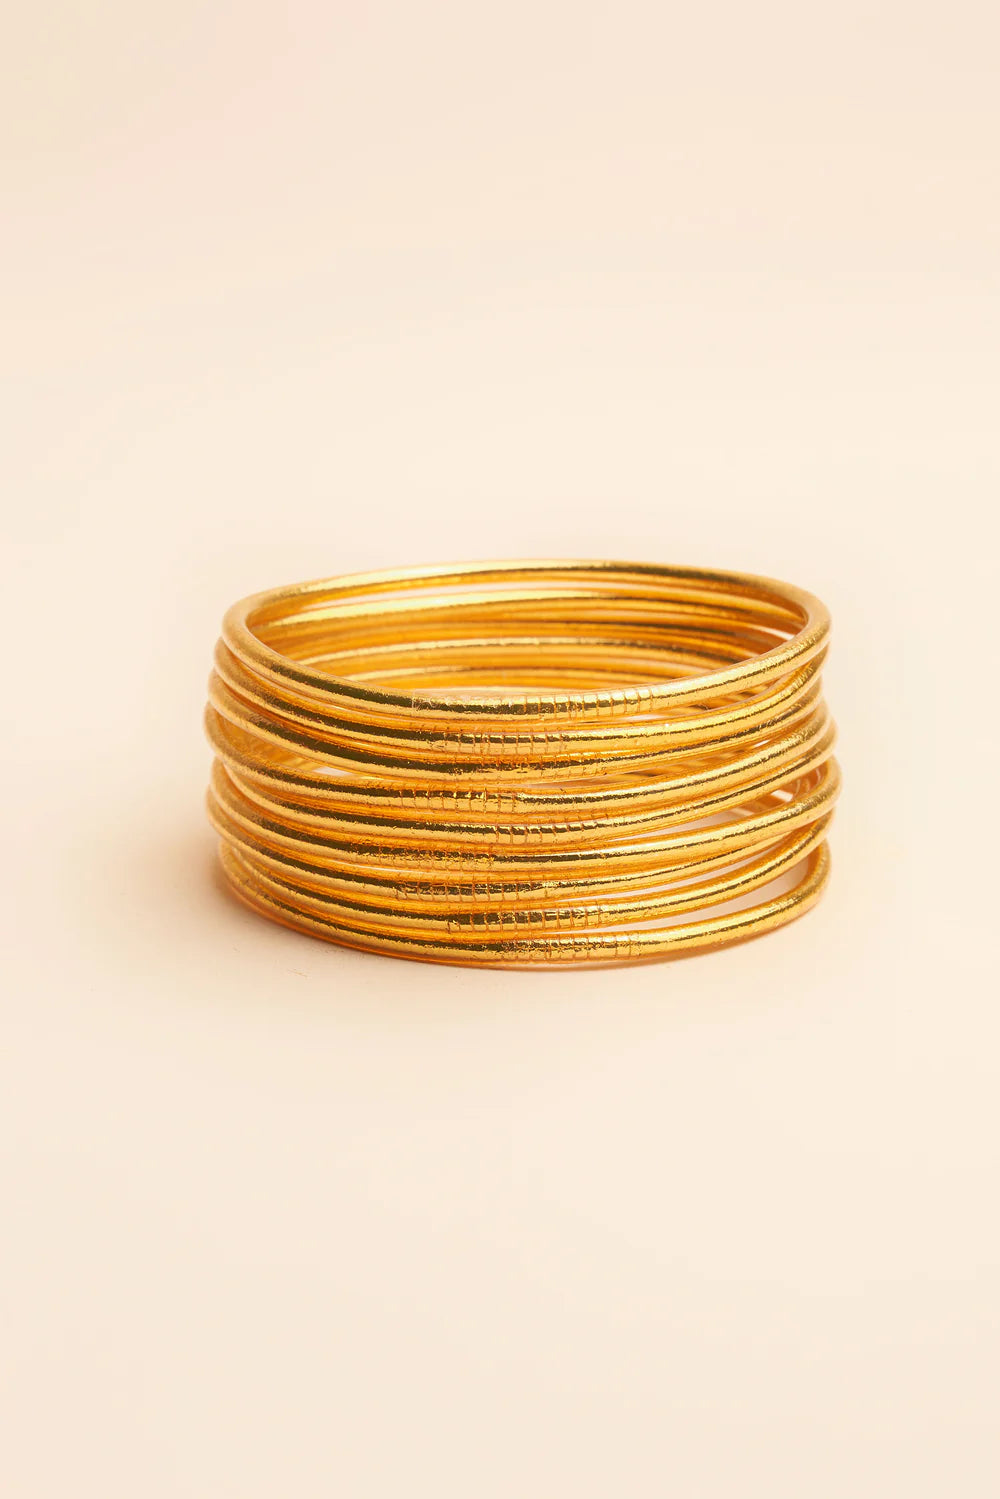 Mantra Goldleaf armband Thin goud